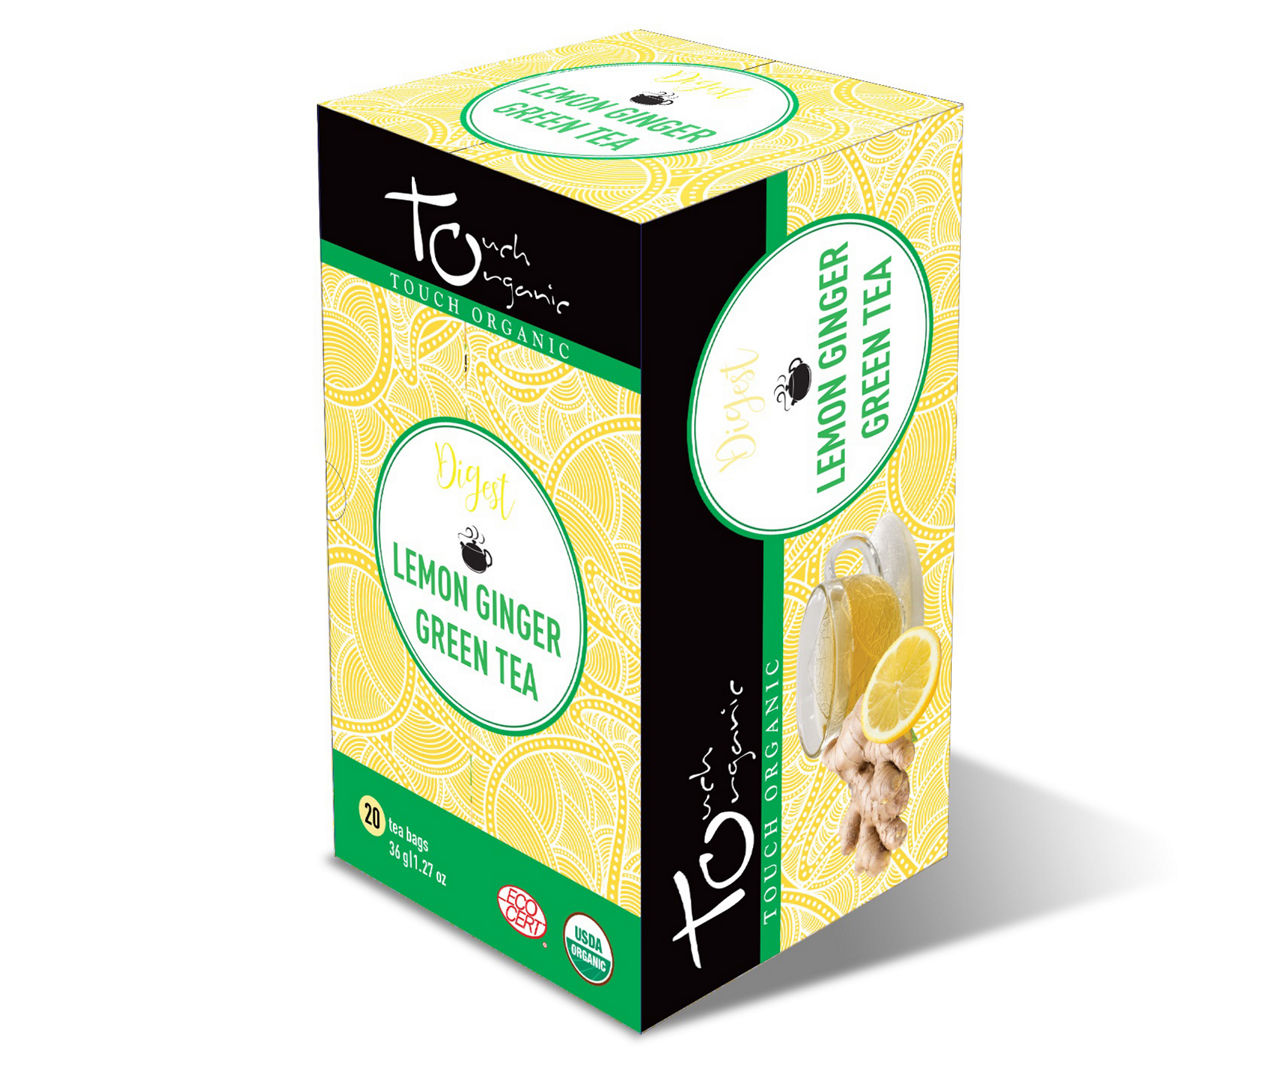 Digestion Lemon Ginger Green Tea, 20-Count